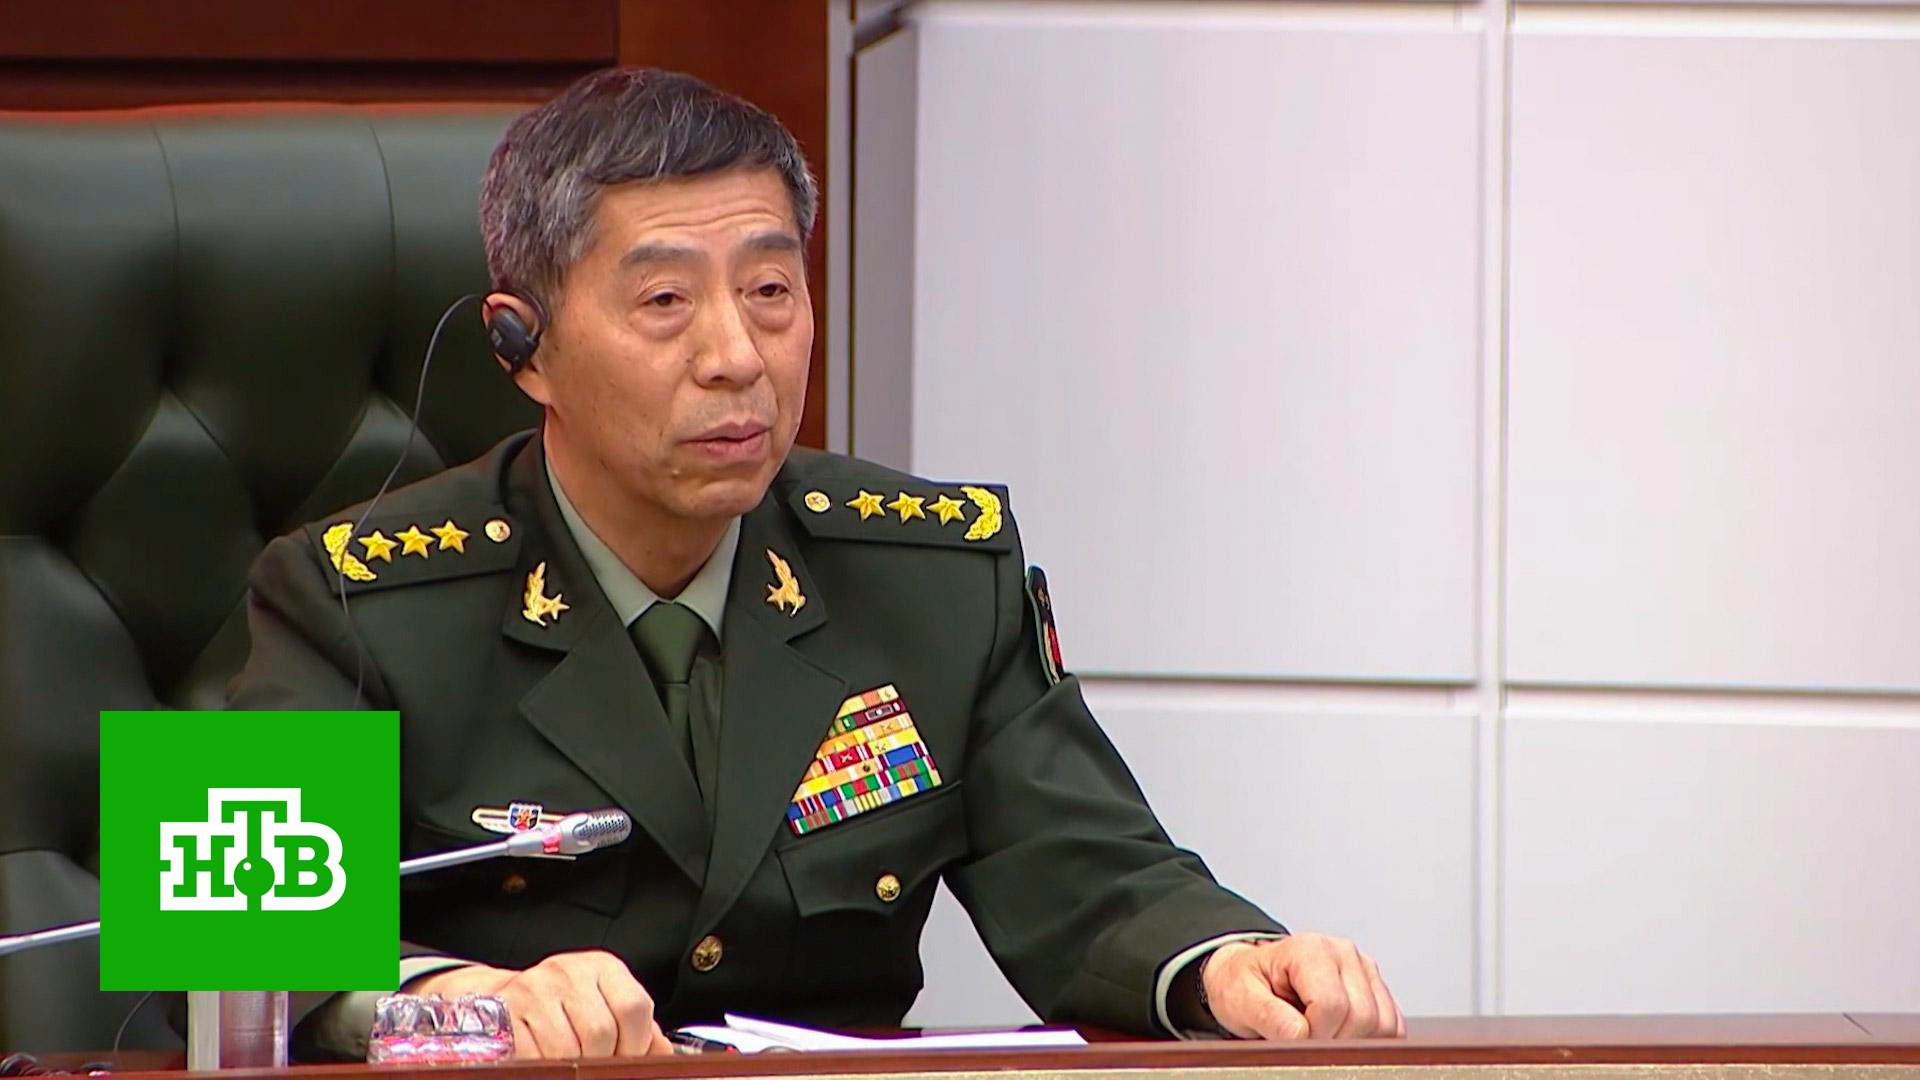 На Западе увидели скрытый и пугающий сигнал в визите министра обороны Китая в РФ | «Итоги недели»